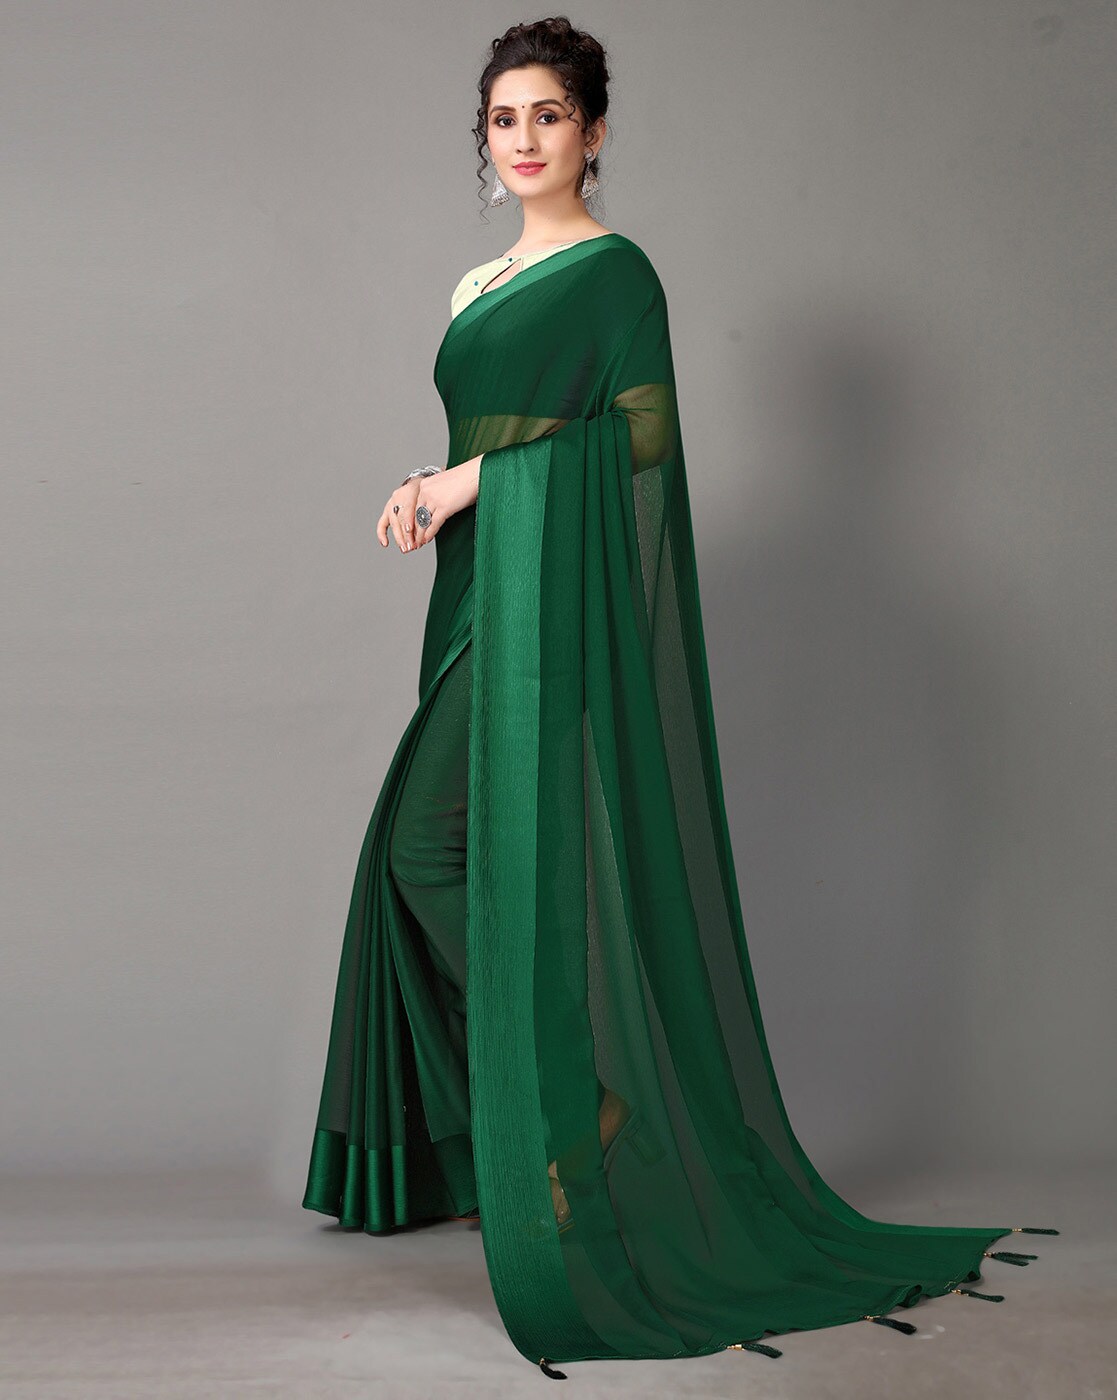 Ruchira Jadhav's beautiful photoshoot in a green saree | Times of India-sgquangbinhtourist.com.vn